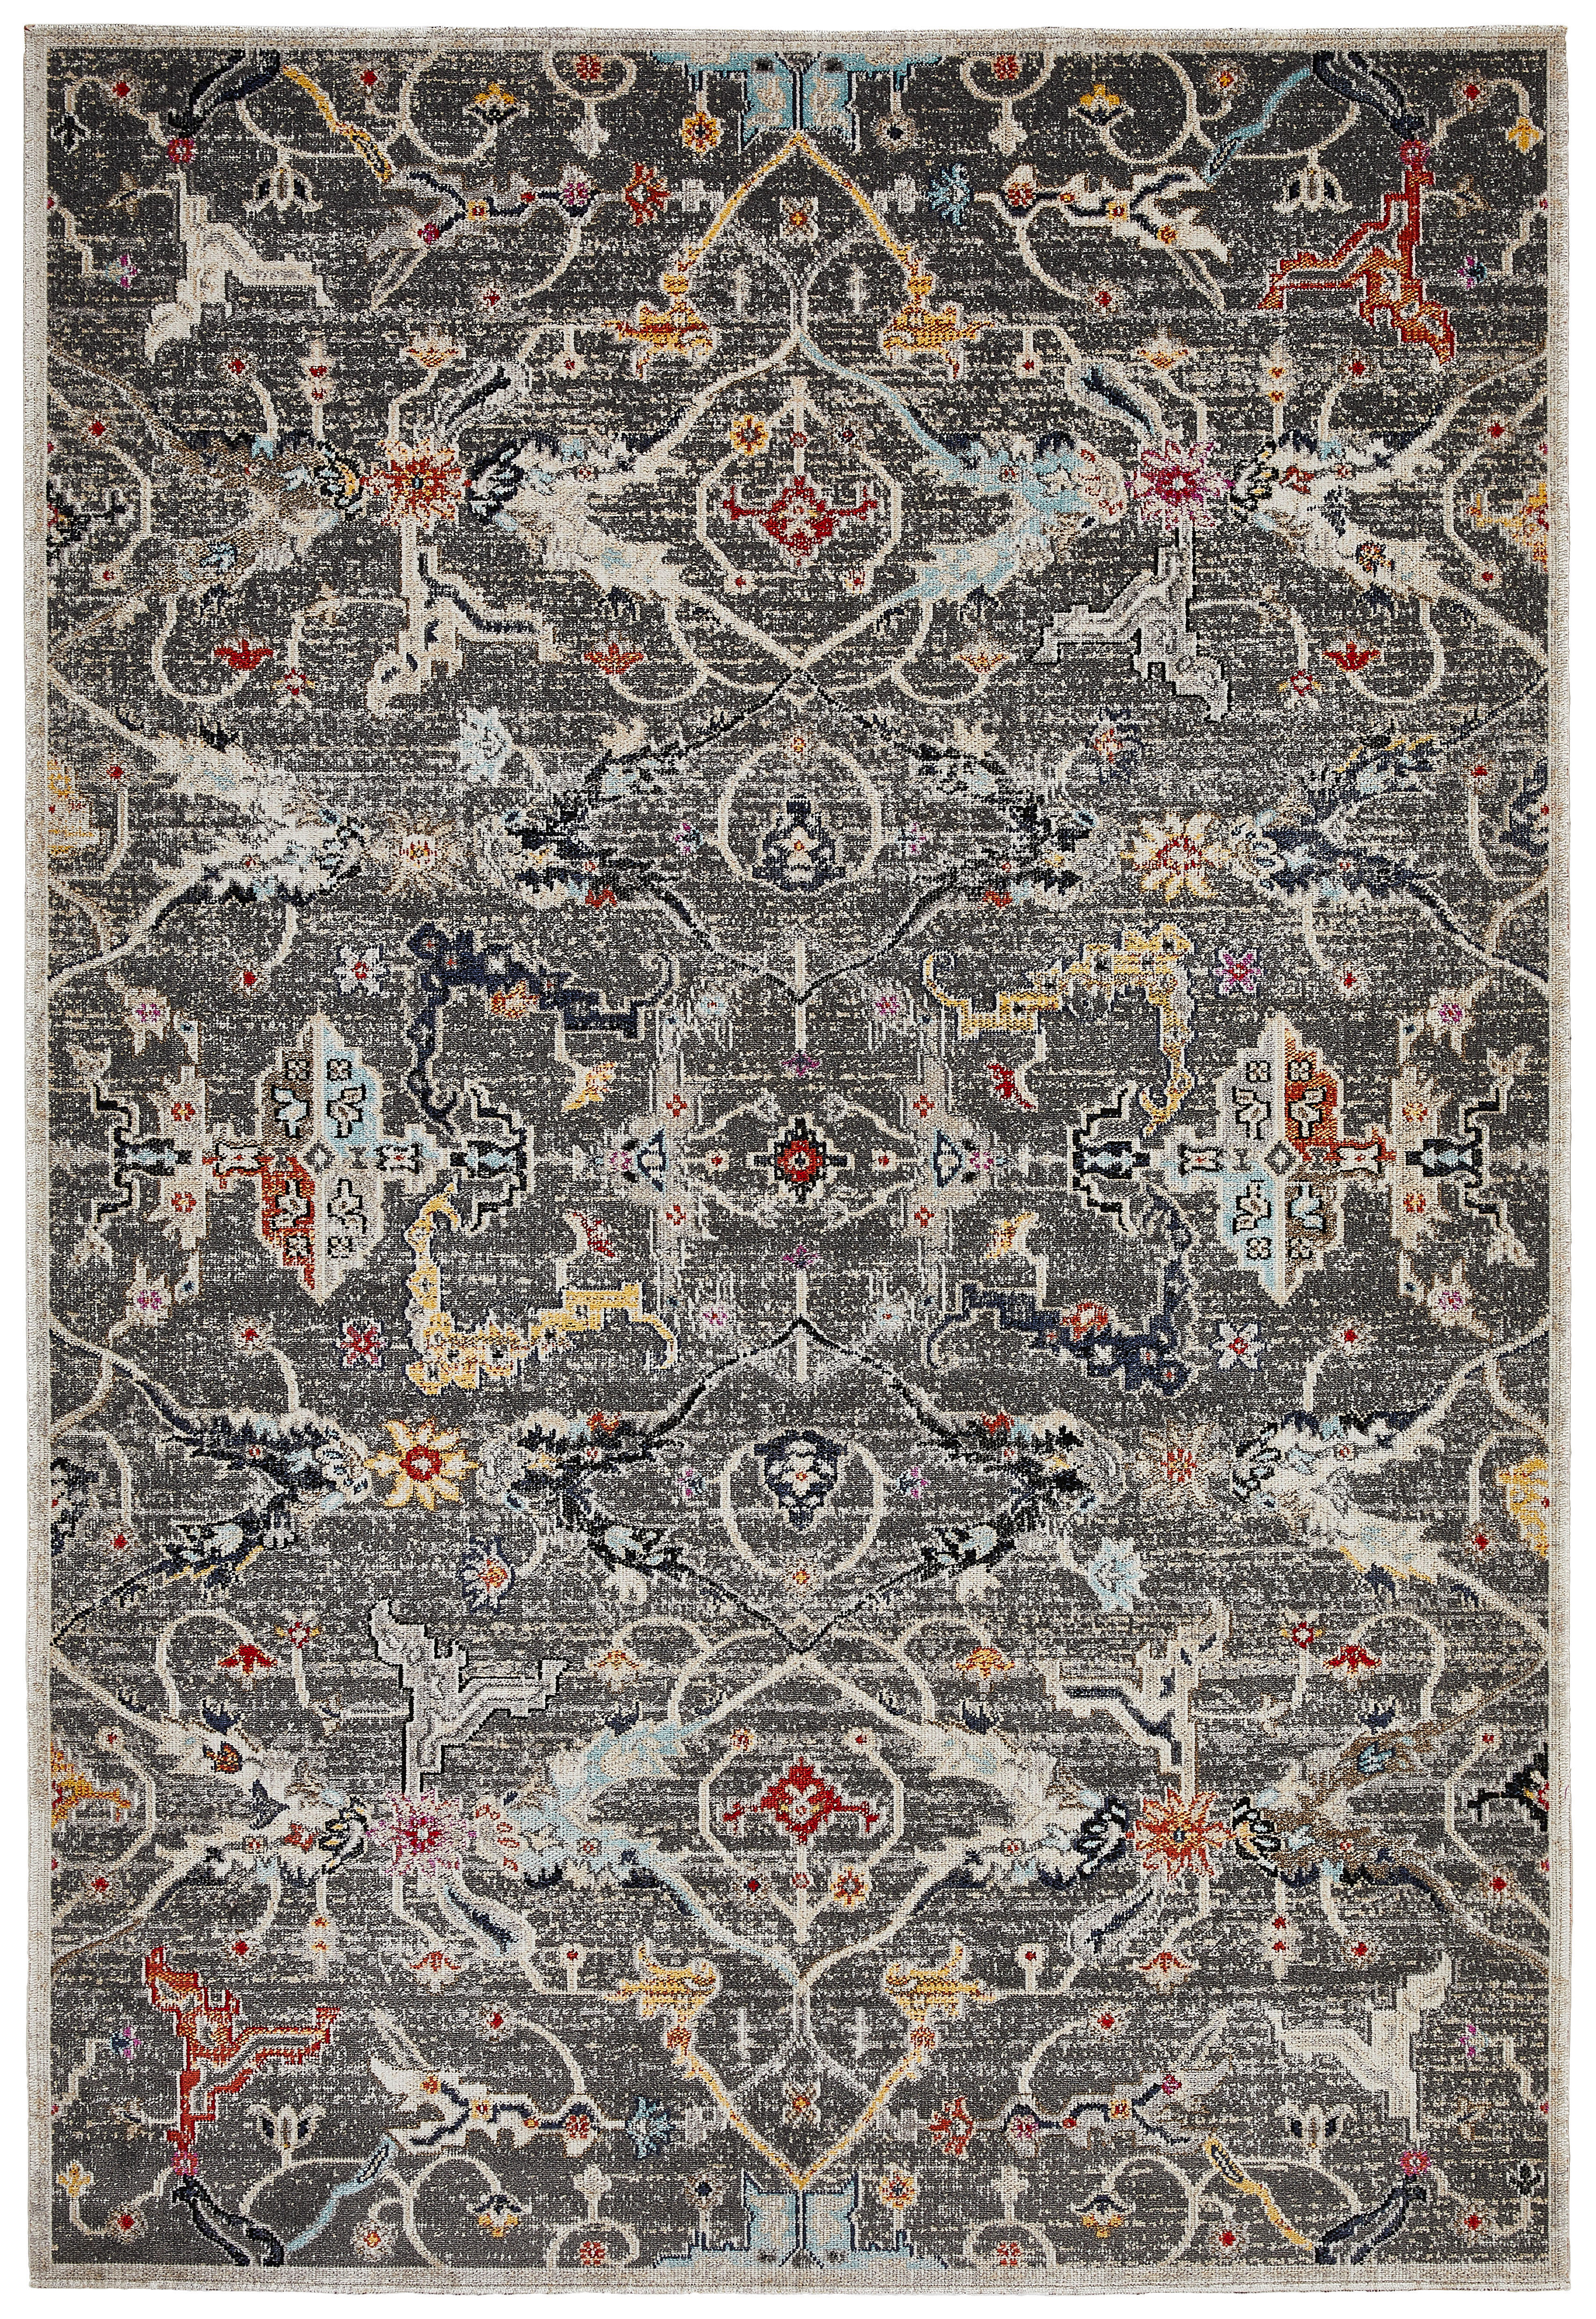 OUTDOORTEPPICH  - Multicolor, Design, Naturmaterialien/Textil (80/150cm) - Novel